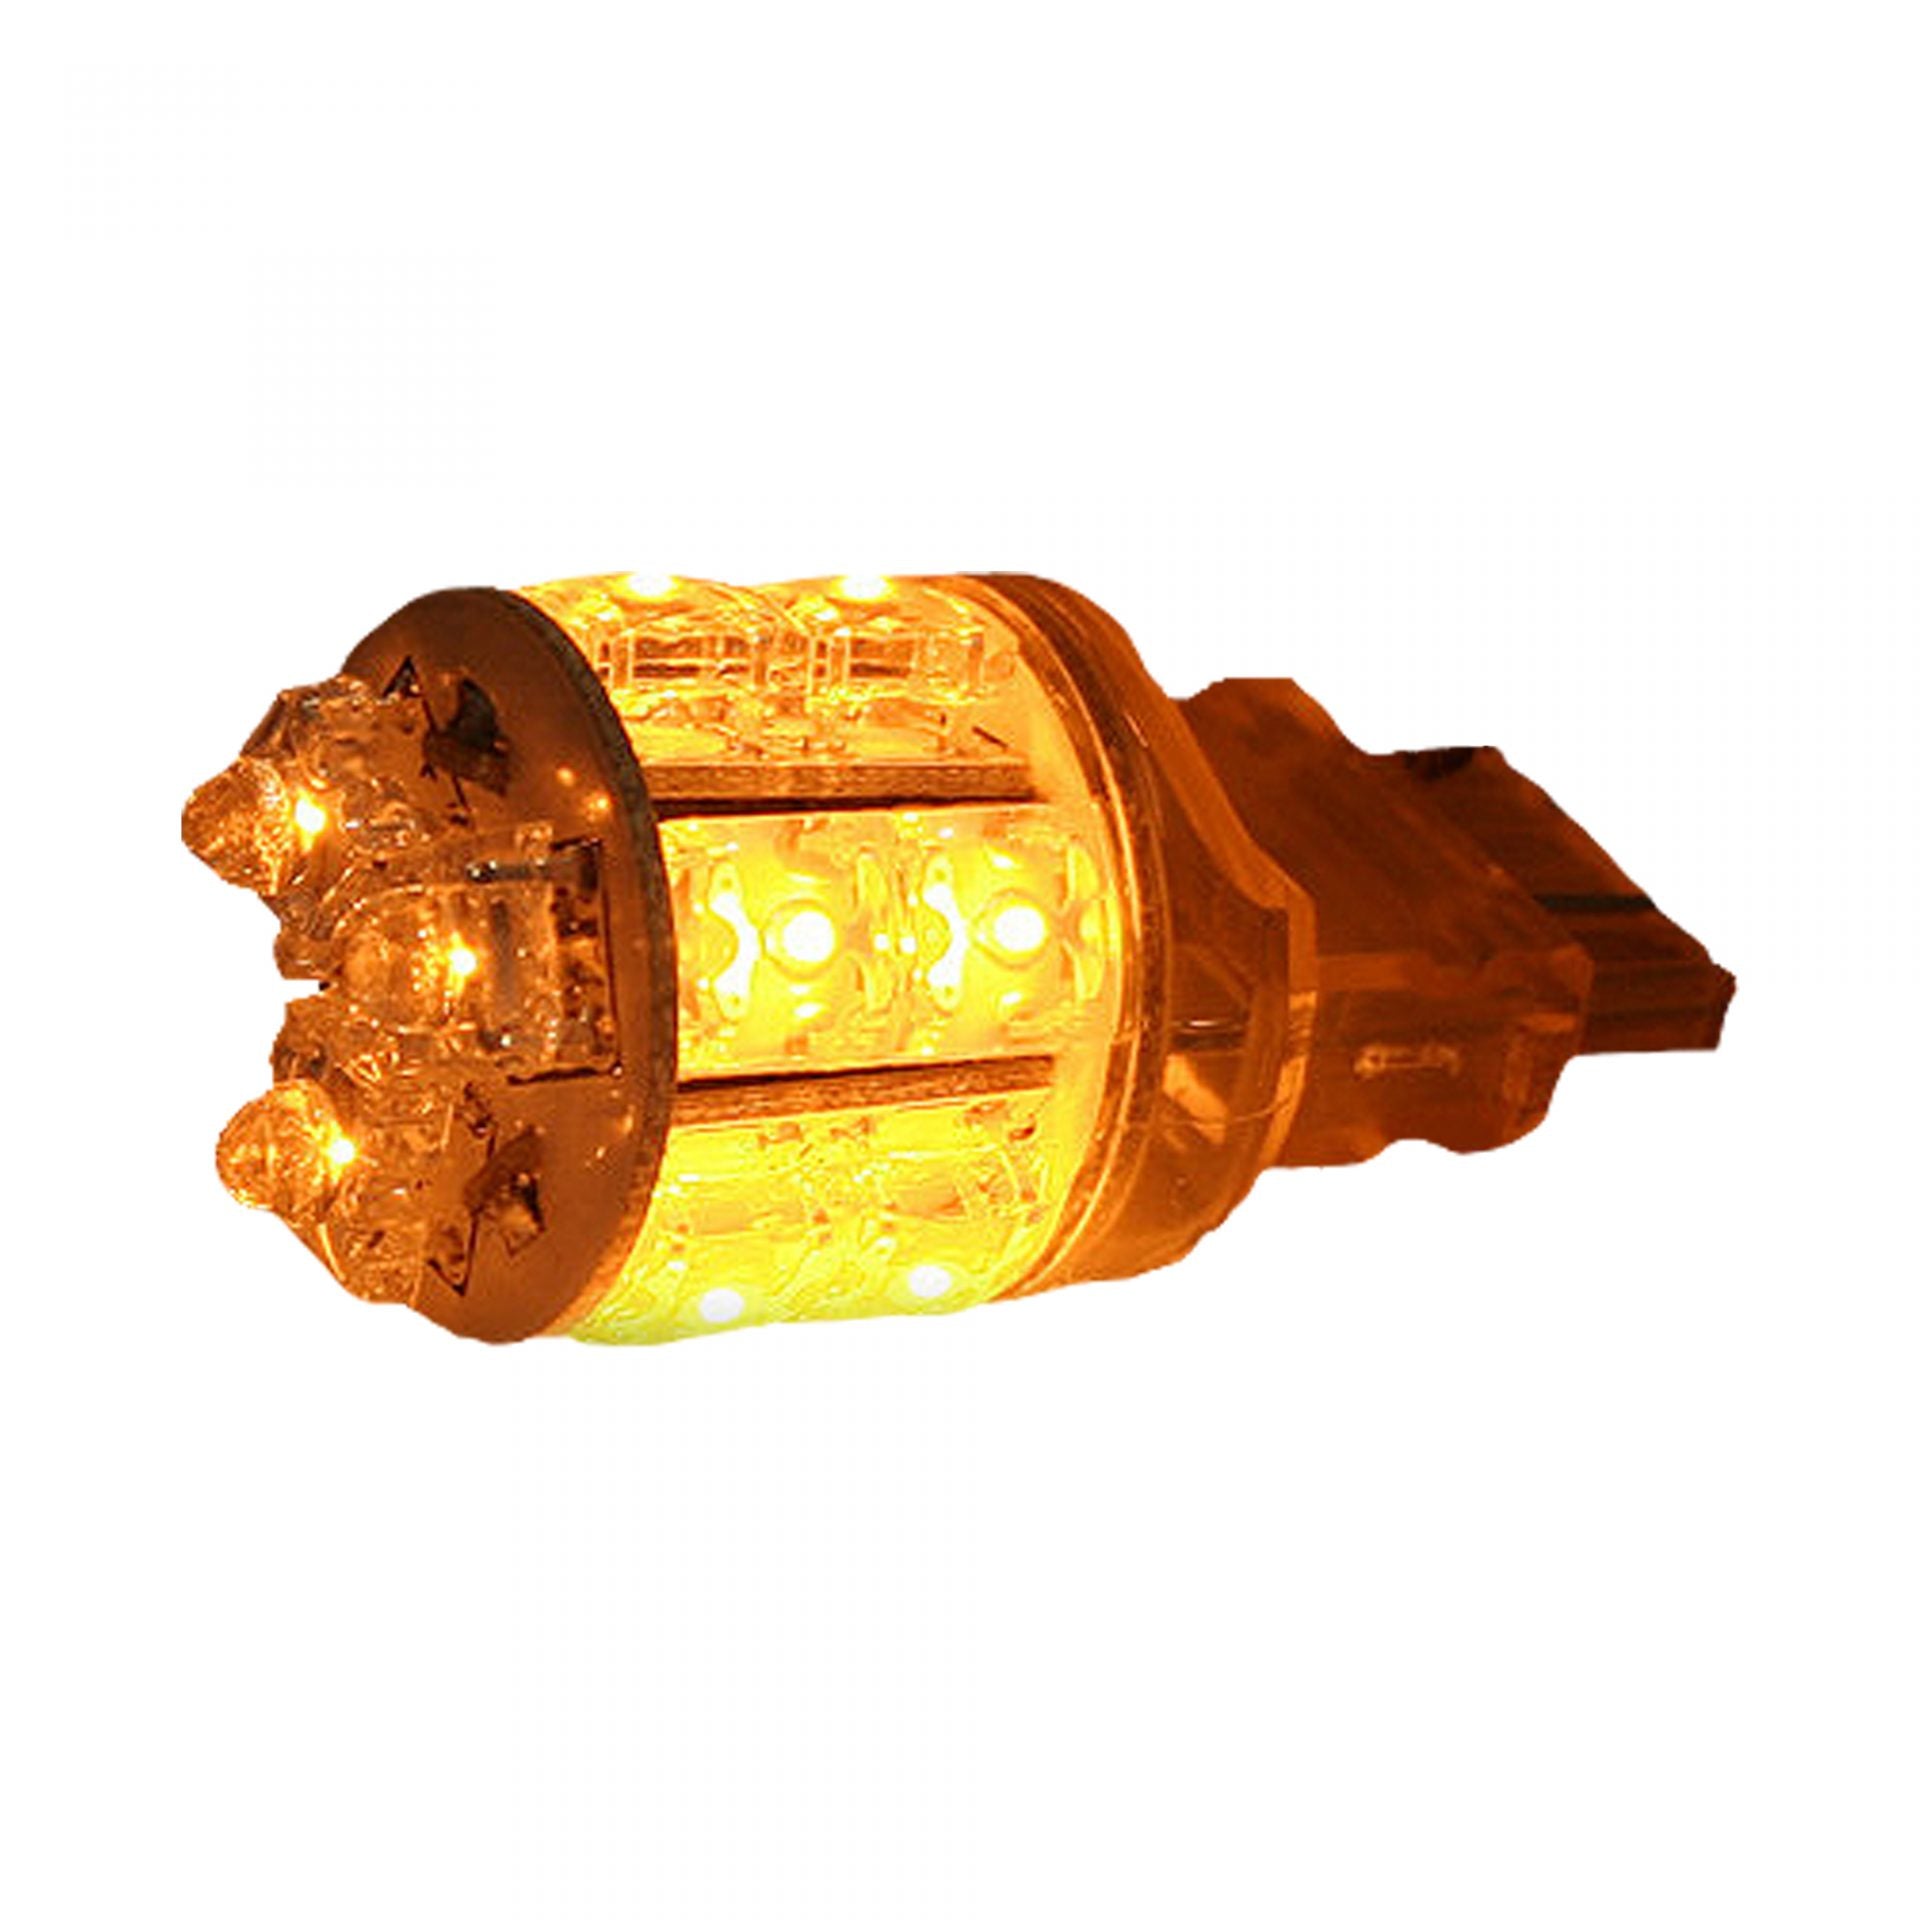 Voltage Automotive LED Bulb For 3057 3157 3357 3457 Brake Light